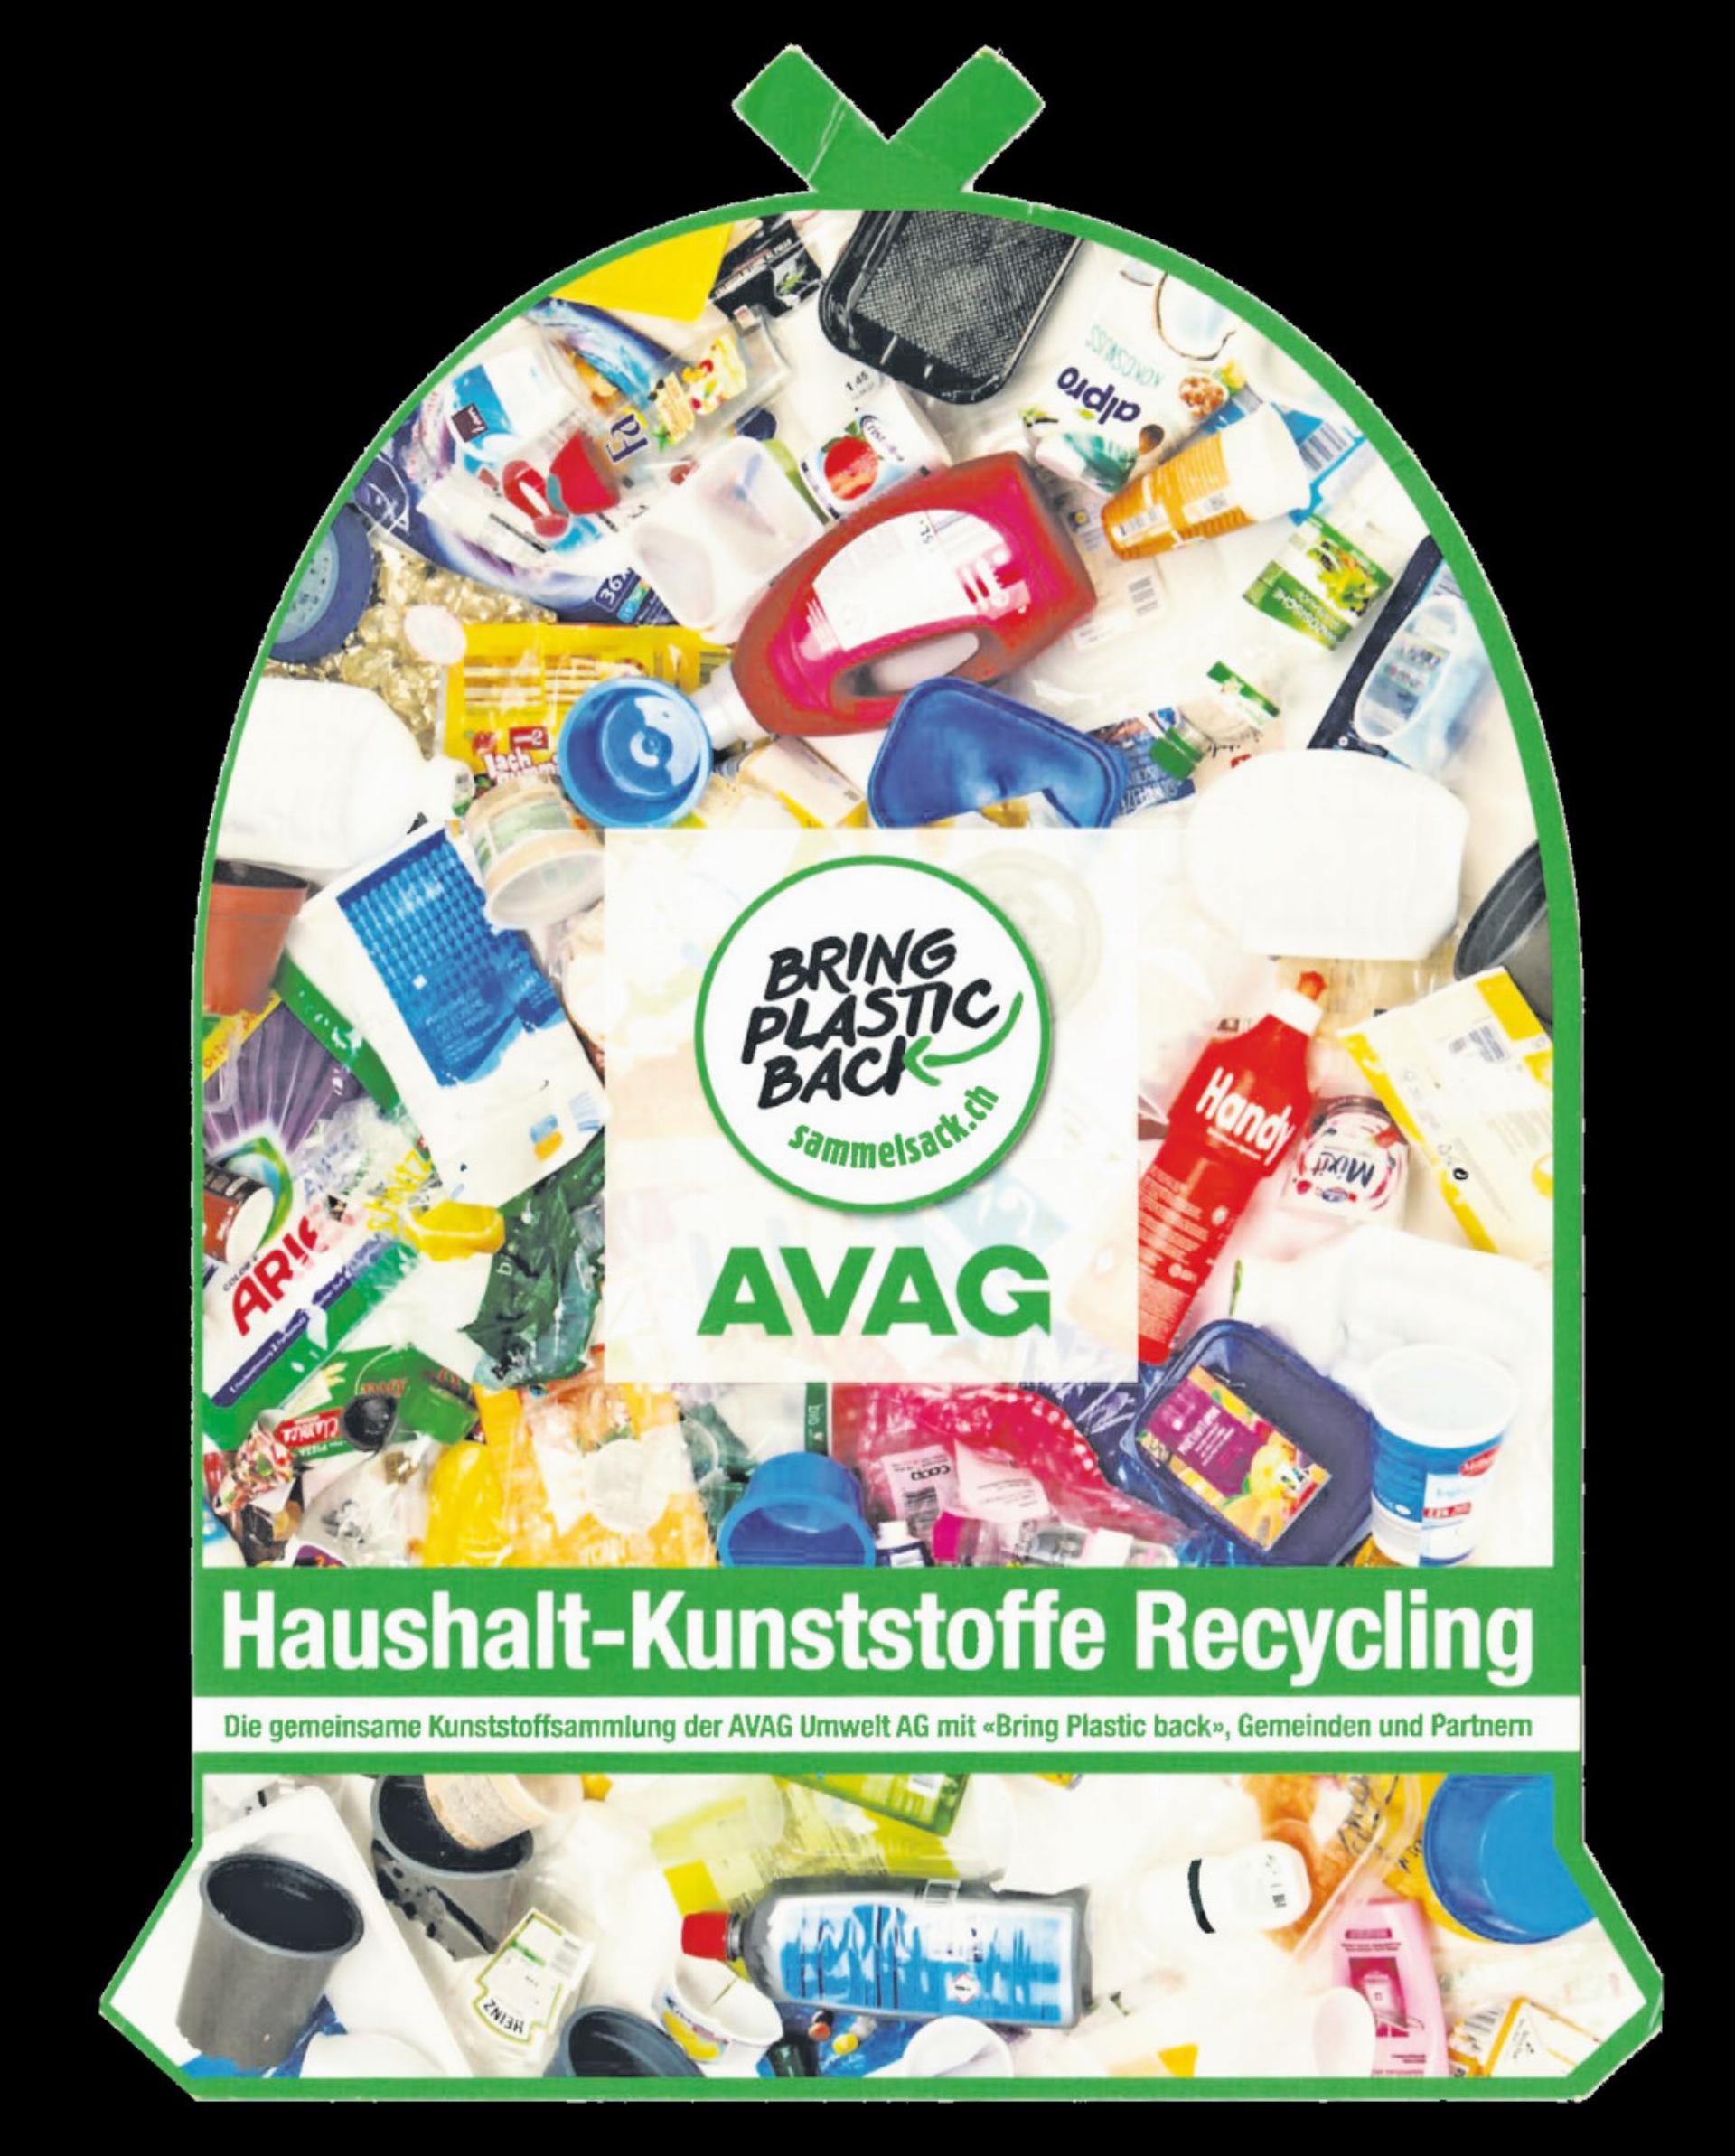 Ein solcher Flyer mit allen wichtigen Informationen zum Kunststoffrecycling findet sich in diesen Tagen in den Frutiger Briefkästen. BILD: ZVG